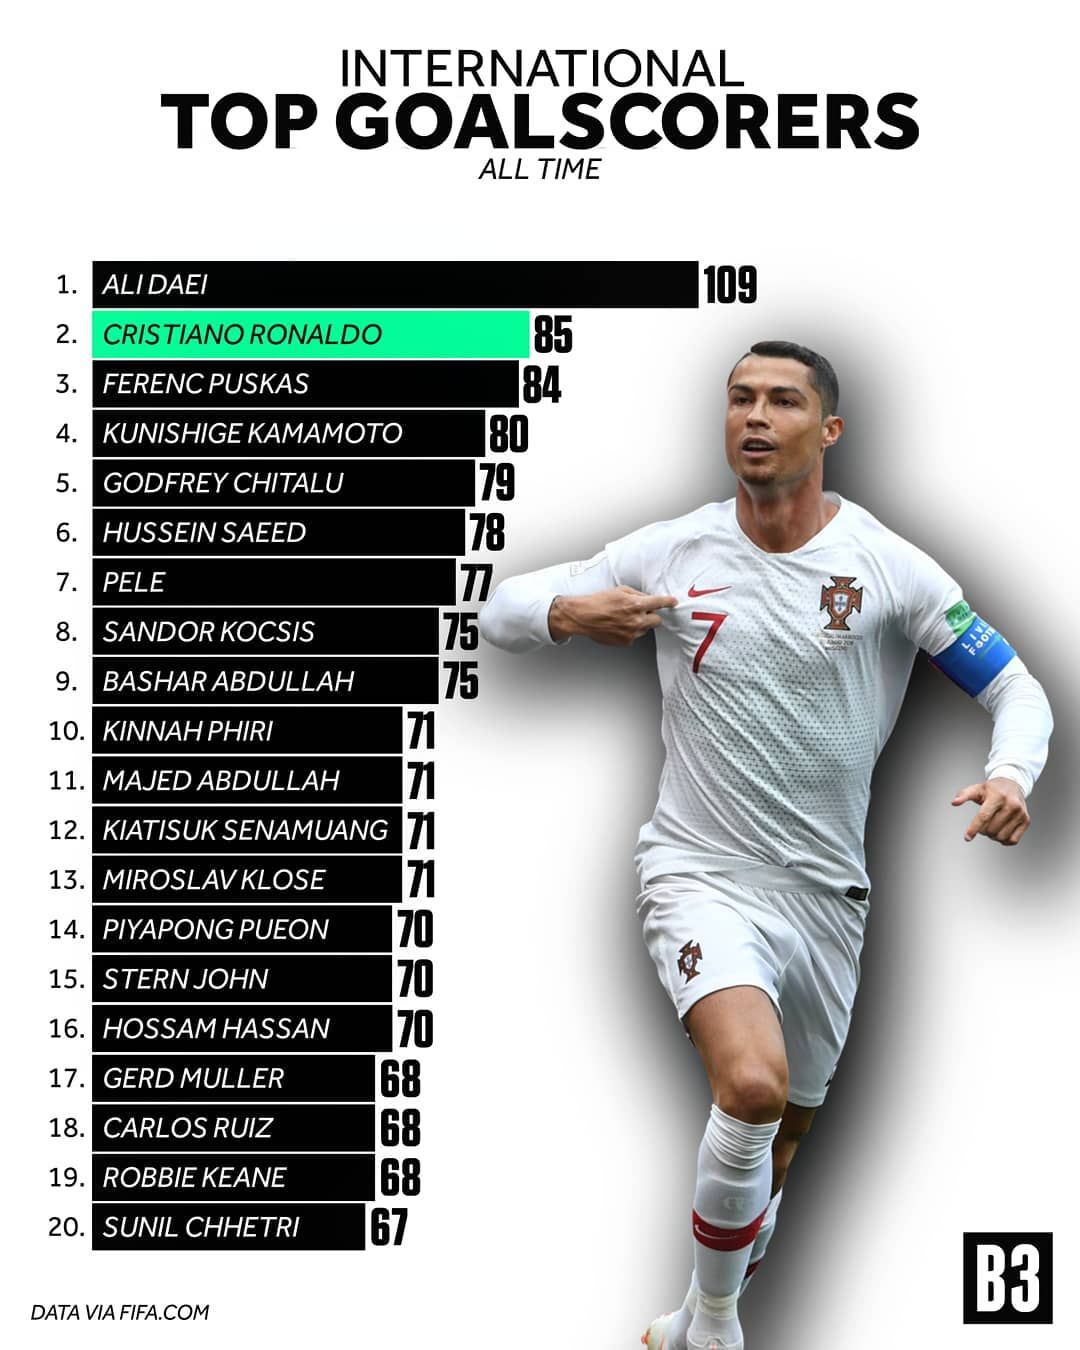 Can Cristiano Ronaldo Beat Ali Daei Of Iran To Make World Record